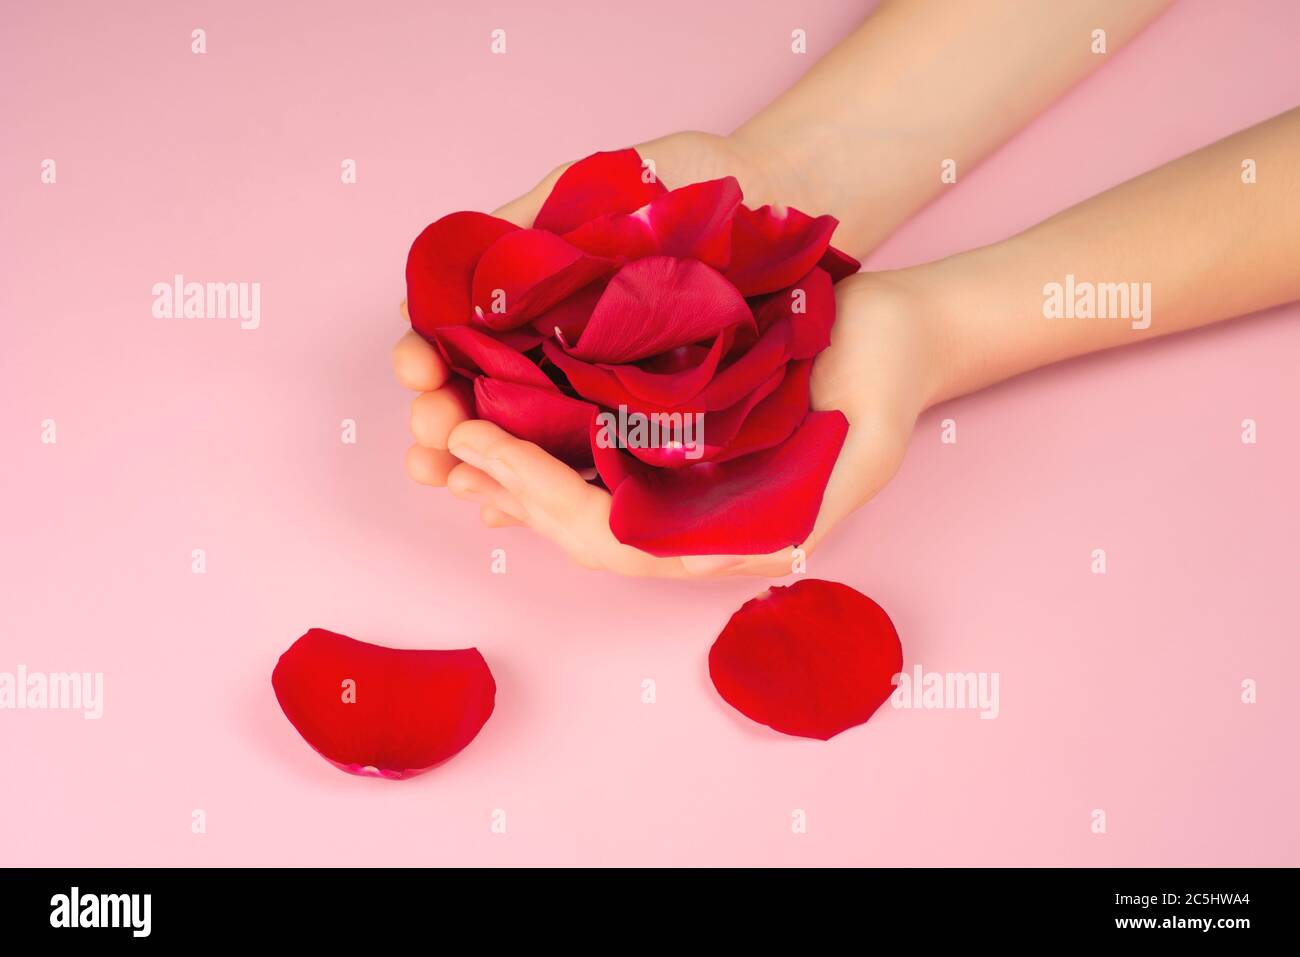 Petali di rose rosse in mani femminili su sfondo rosa. Concetto di cura attuale o personale. Idea trendy per San Valentino, Giornata Internazionale delle Donne o mot Foto Stock